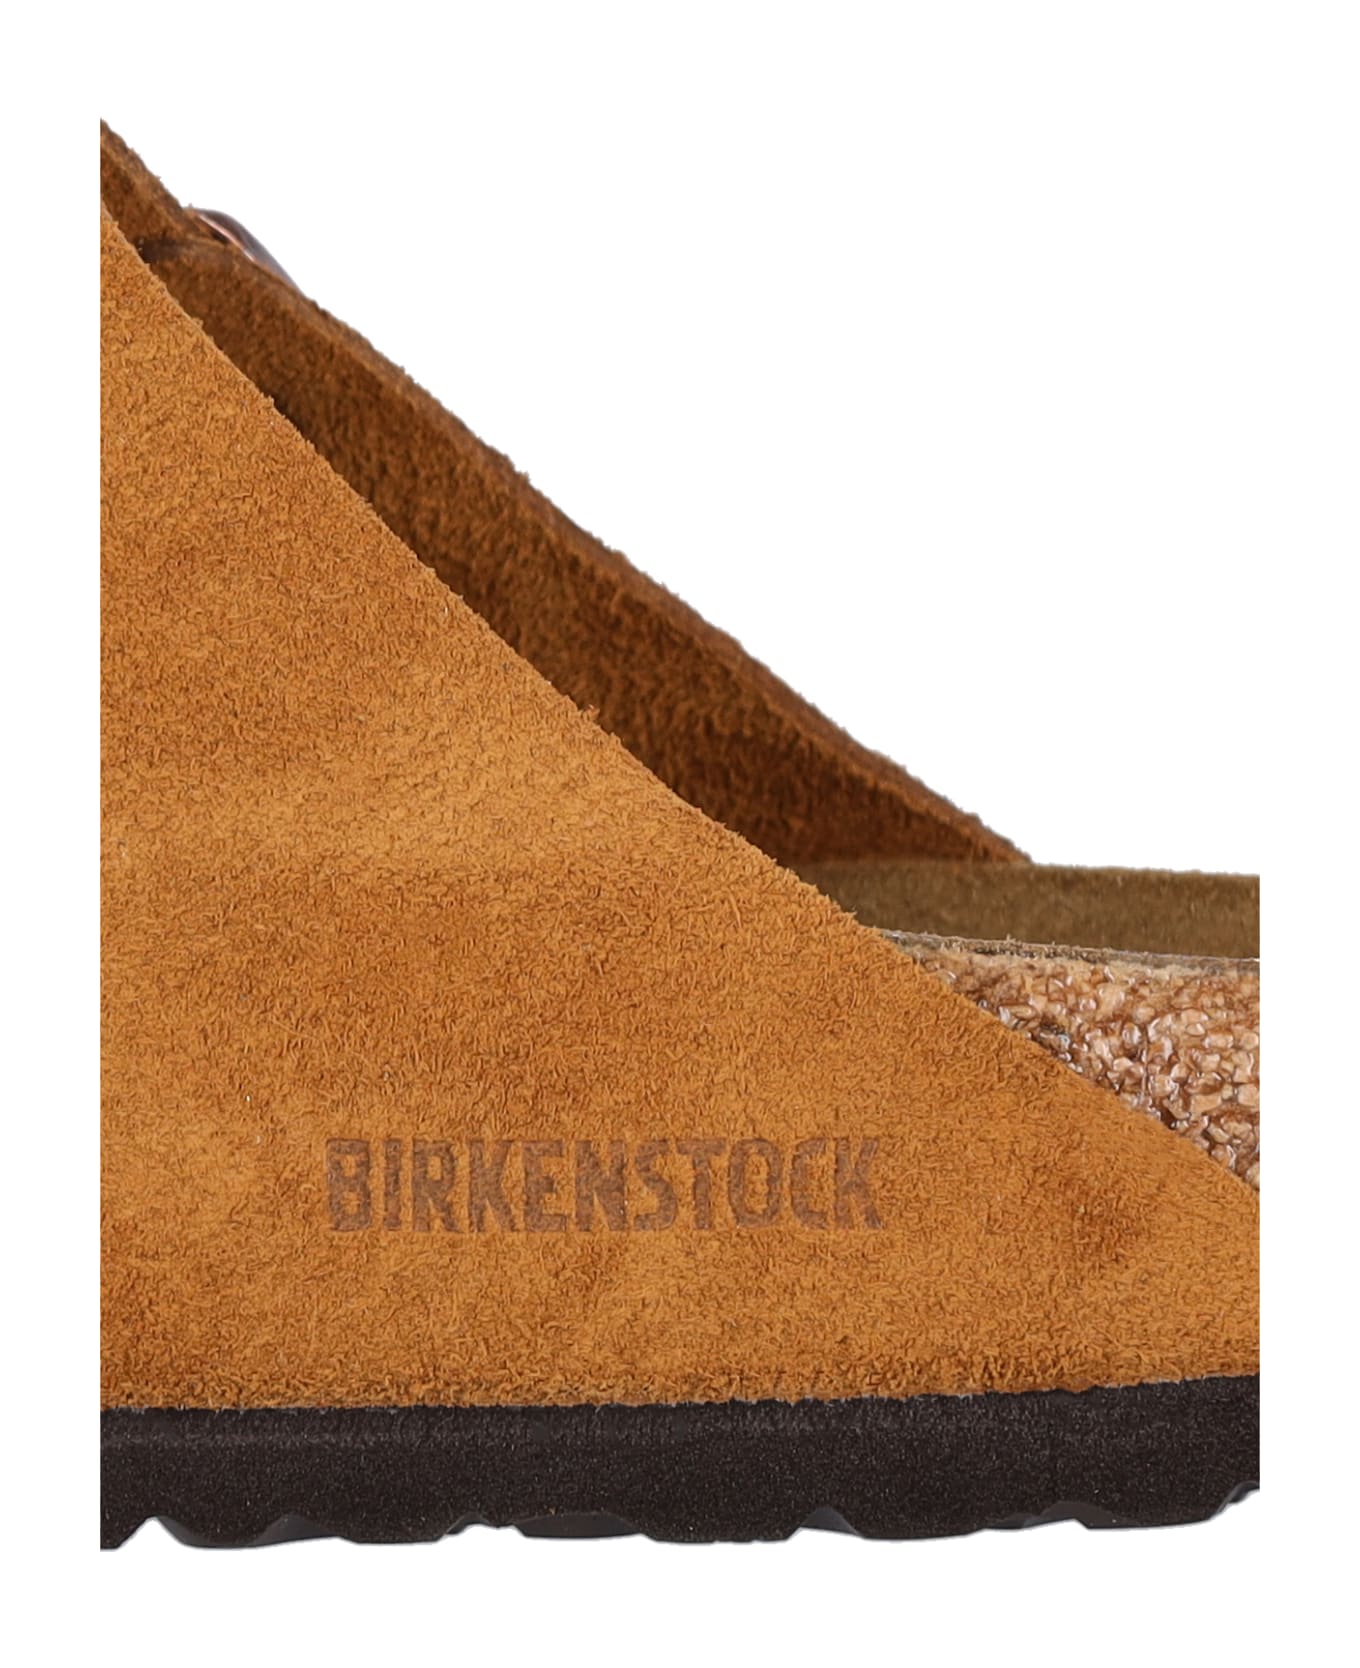 Birkenstock 'arizona' Sandals - MINK